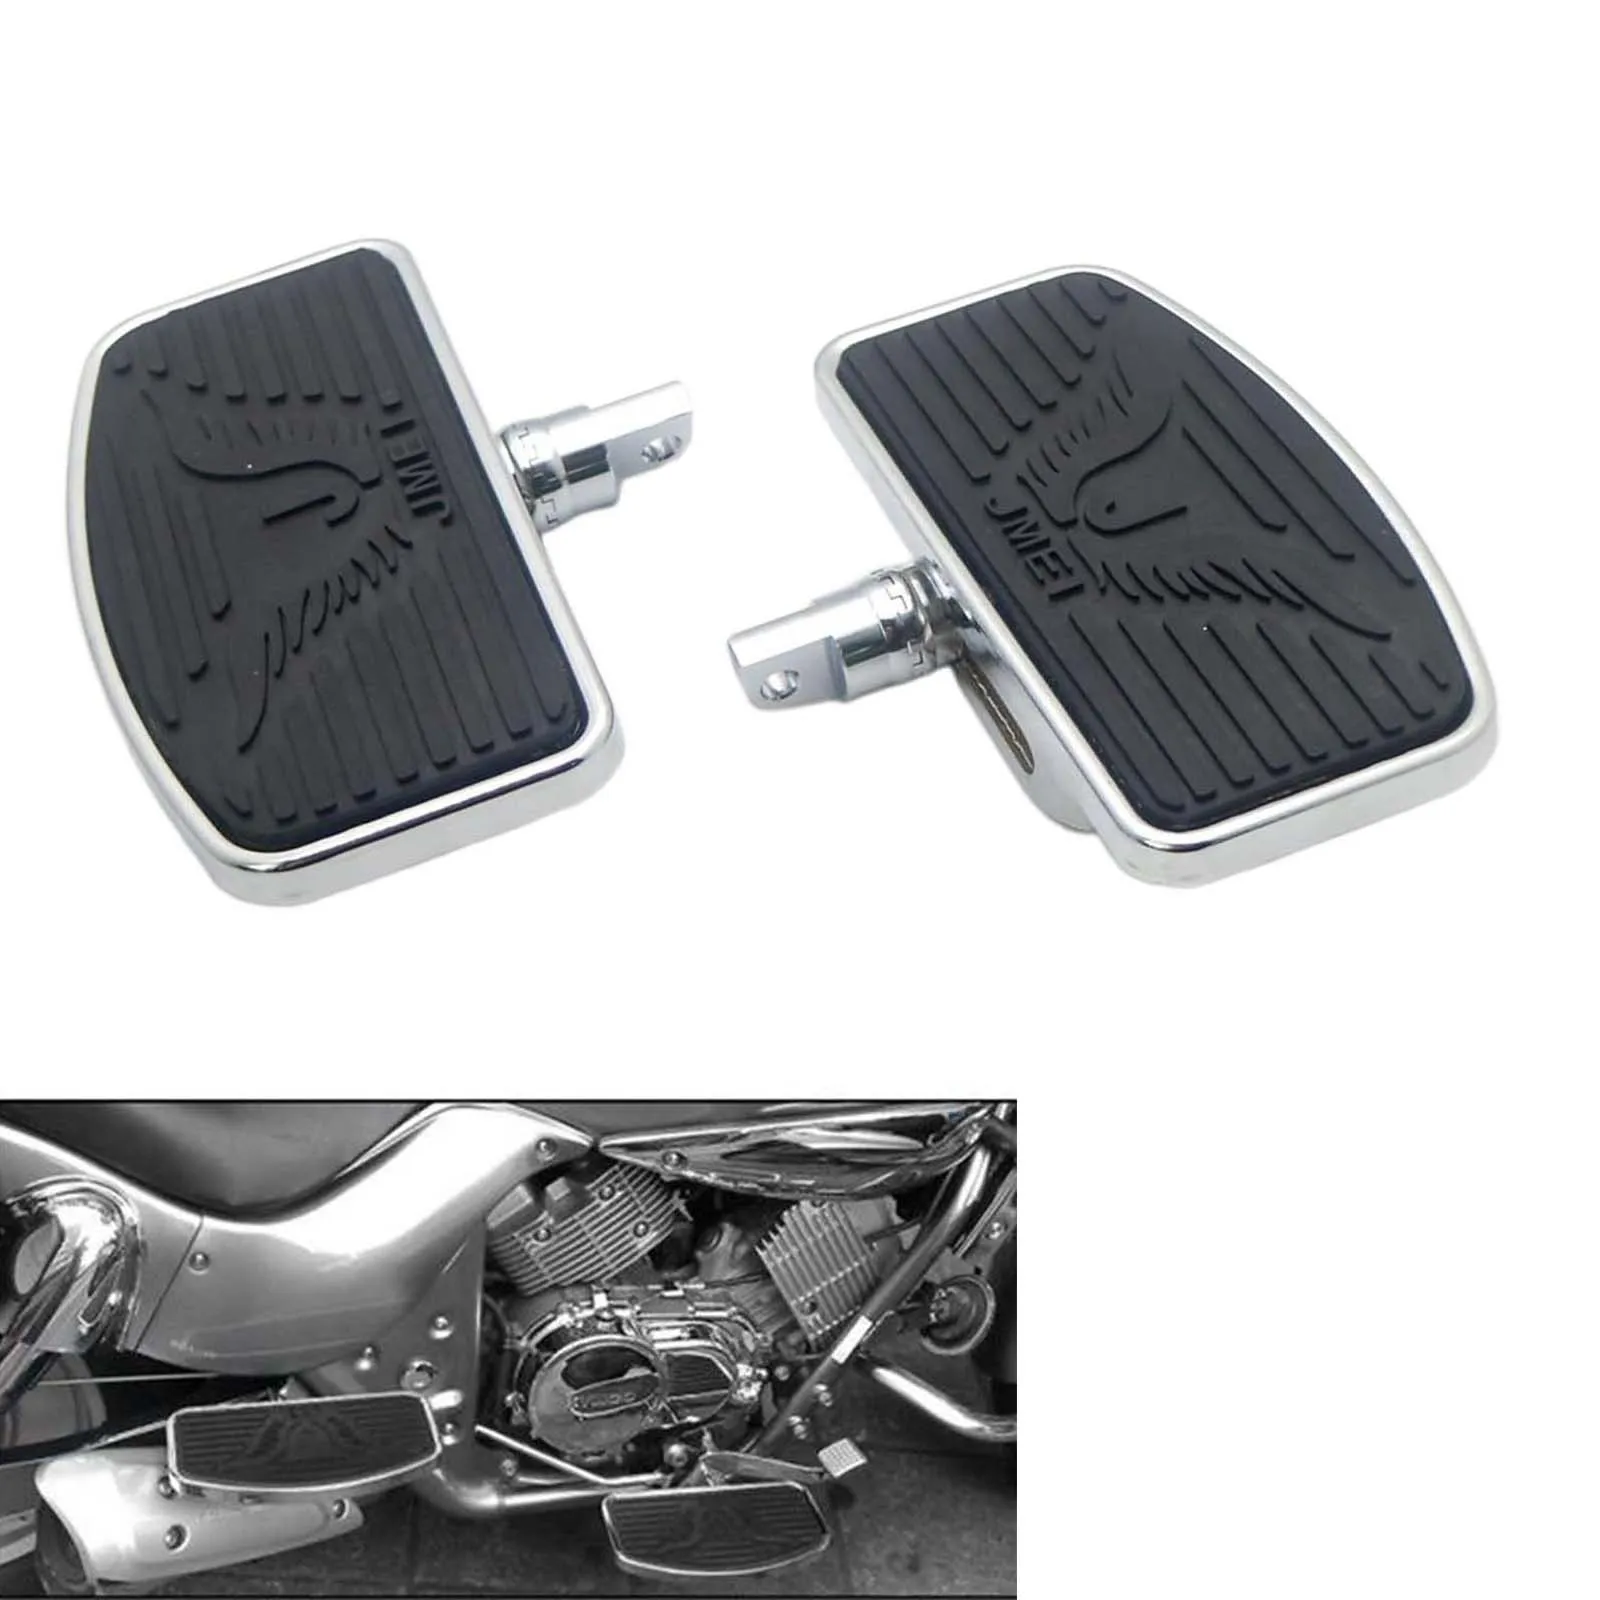 Motorcycle Footpegs Adjustable Rear Passenger Pegs for Harley Sportster 883 1200 Motorcycles, 1 Pair